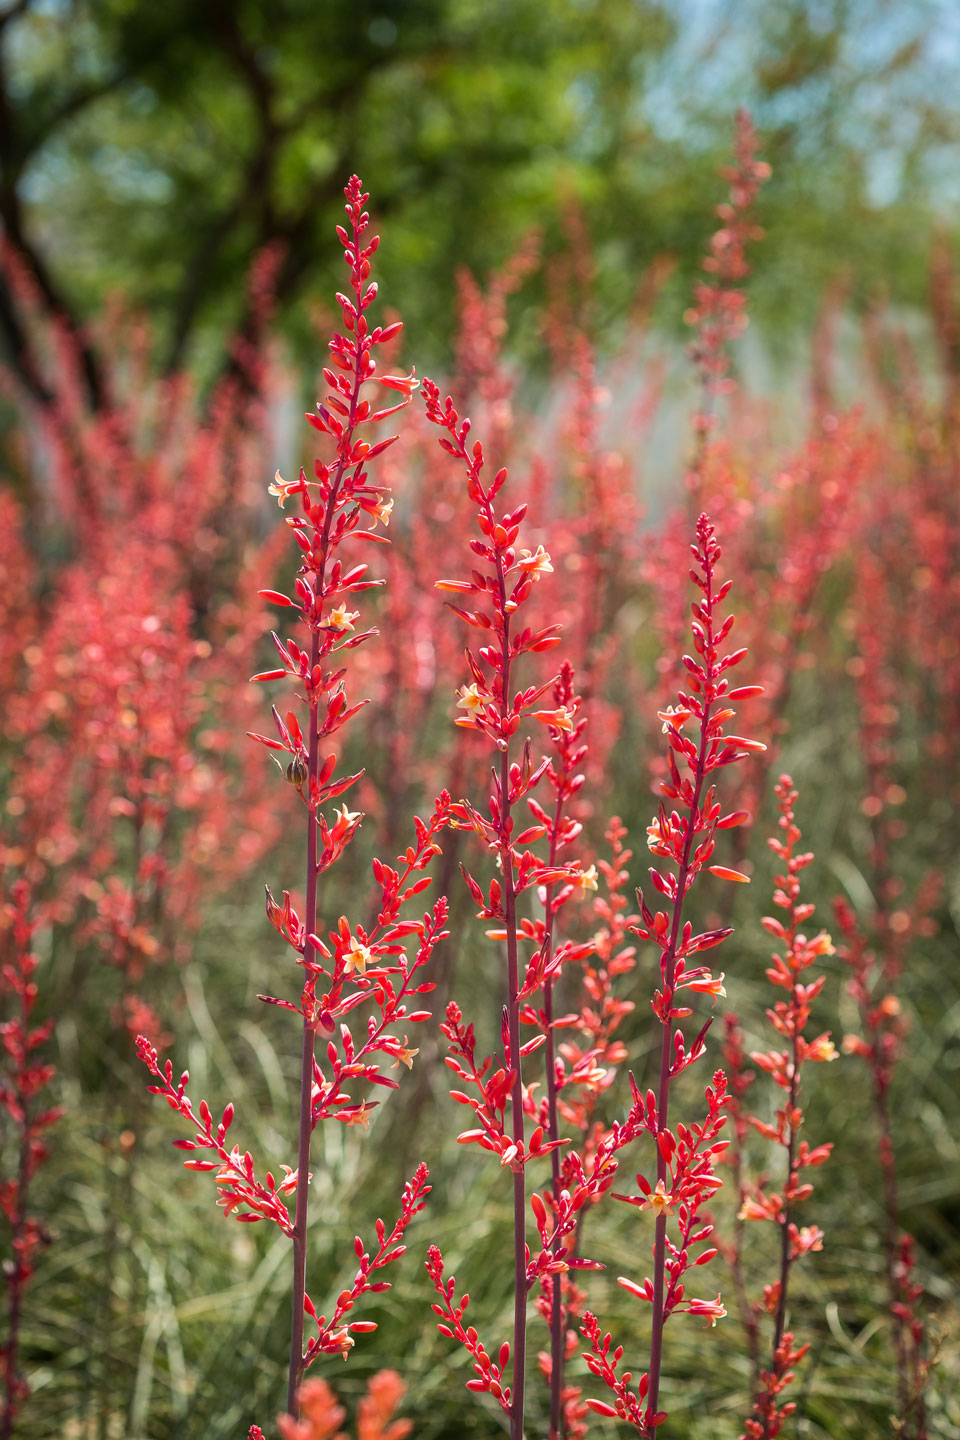 Multiple stalks of Red Hesperaloe full of deep red blooms.